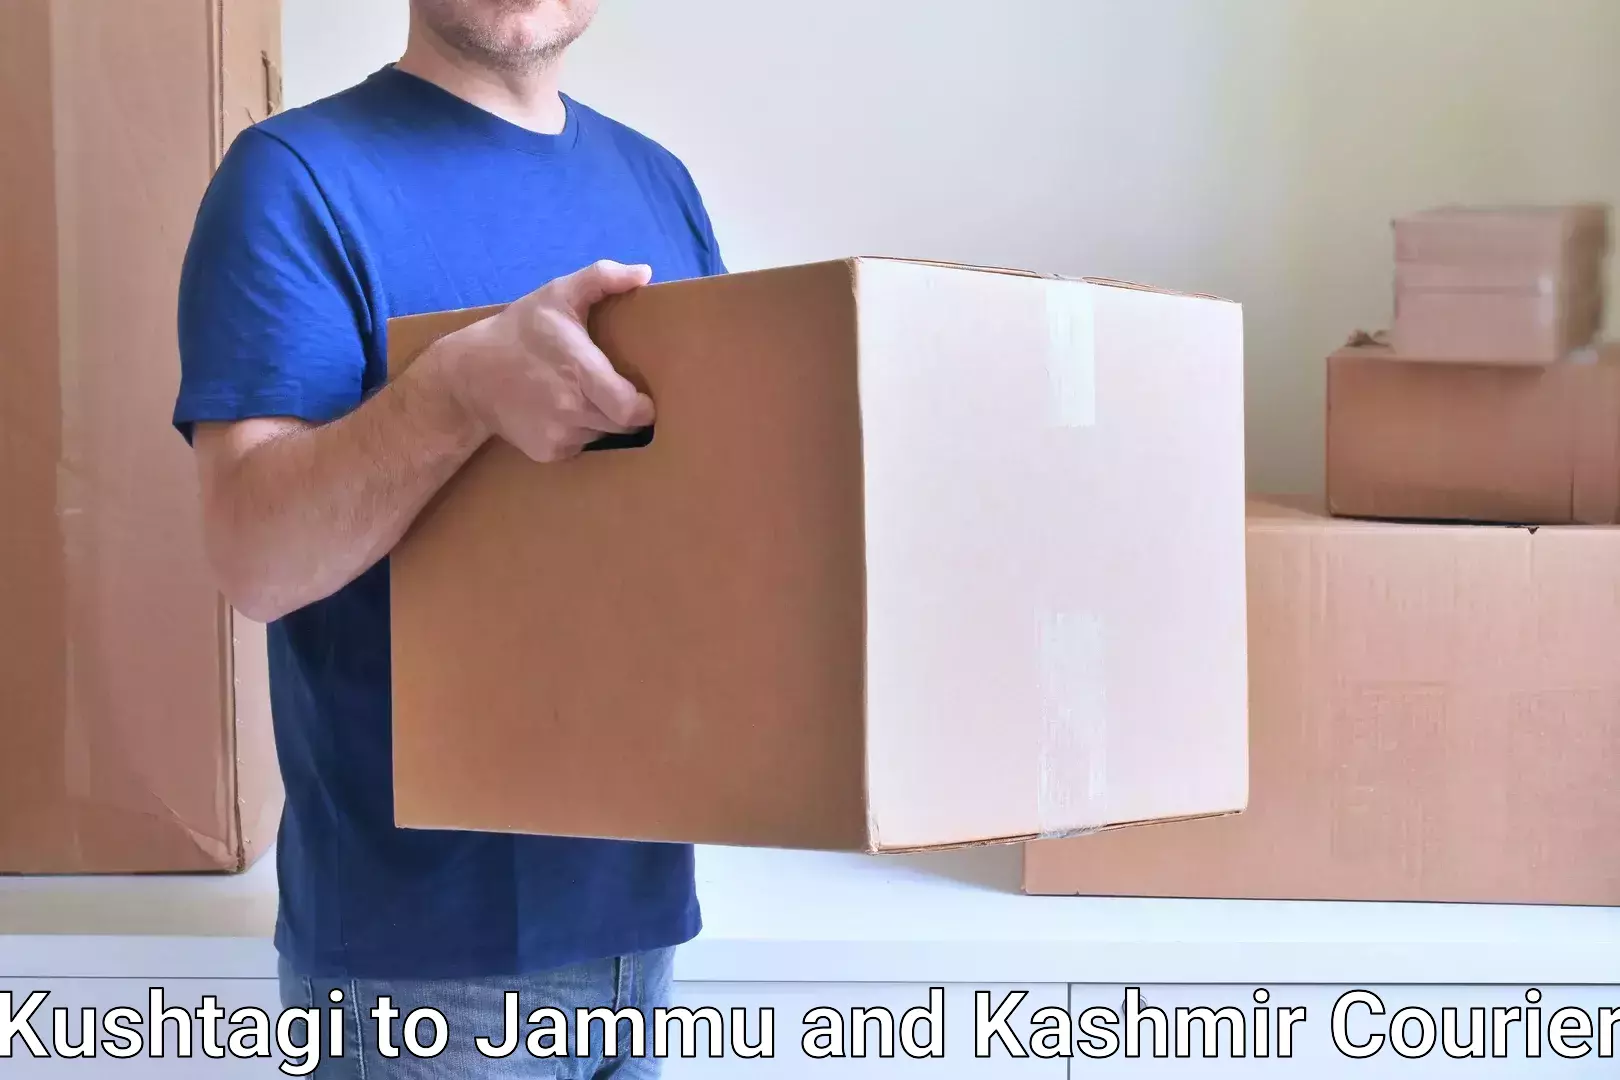 Cargo delivery service Kushtagi to Kupwara